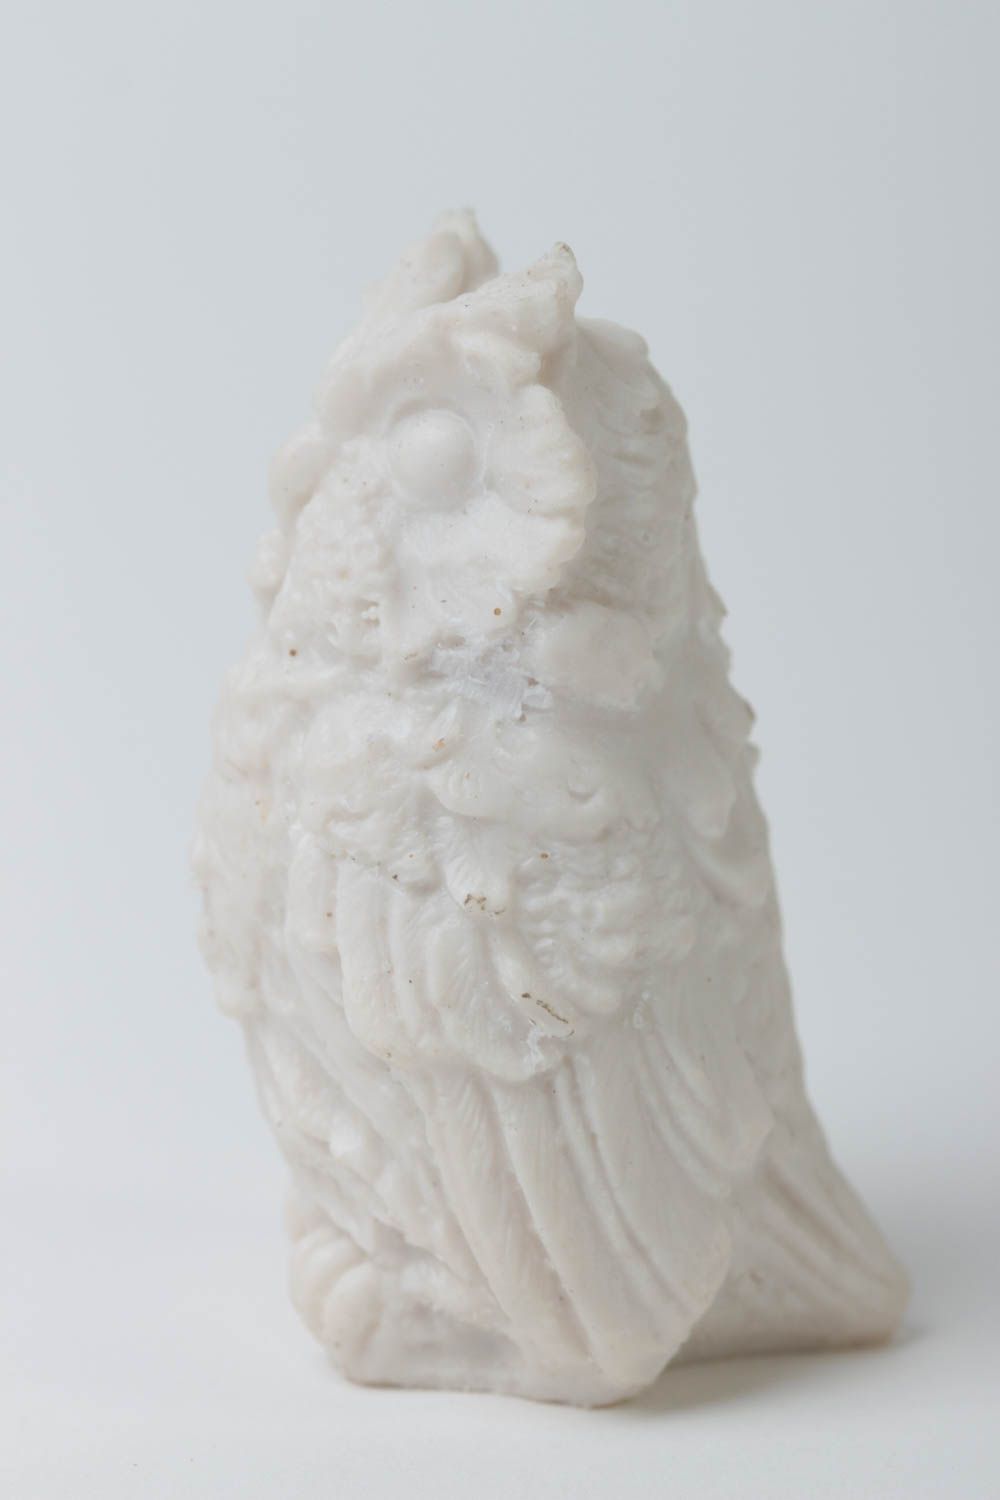 Handmade statuette designer statuette home decor unusual gift owl figurine photo 3